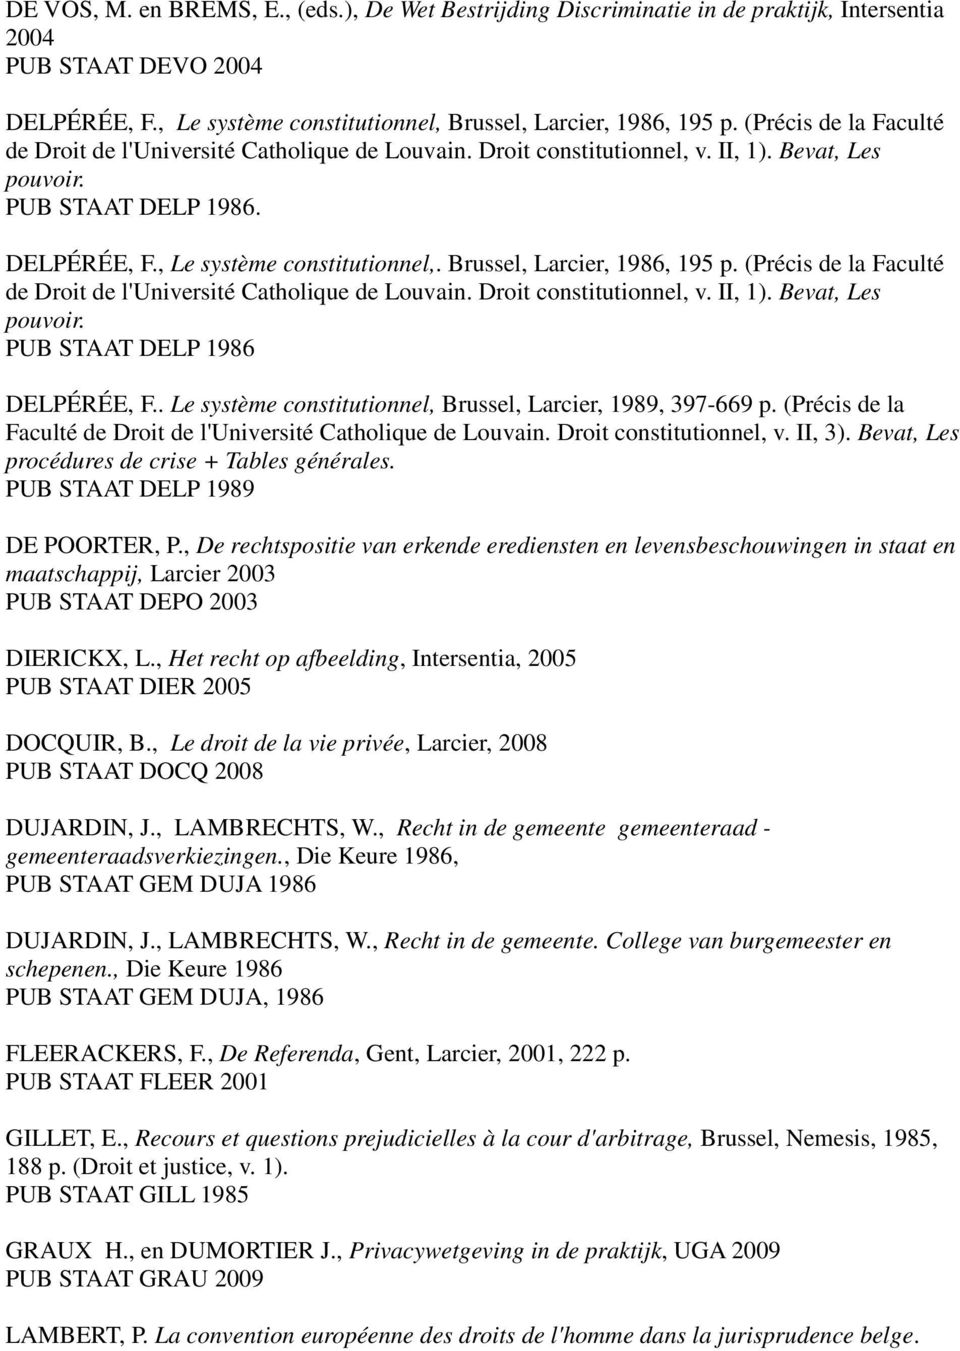 Brussel, Larcier, 1986, 195 p. (Précis de la Faculté de Droit de l'université Catholique de Louvain. Droit constitutionnel, v. II, 1). Bevat, Les pouvoir. PUB STAAT DELP 1986 DELPÉRÉE, F.